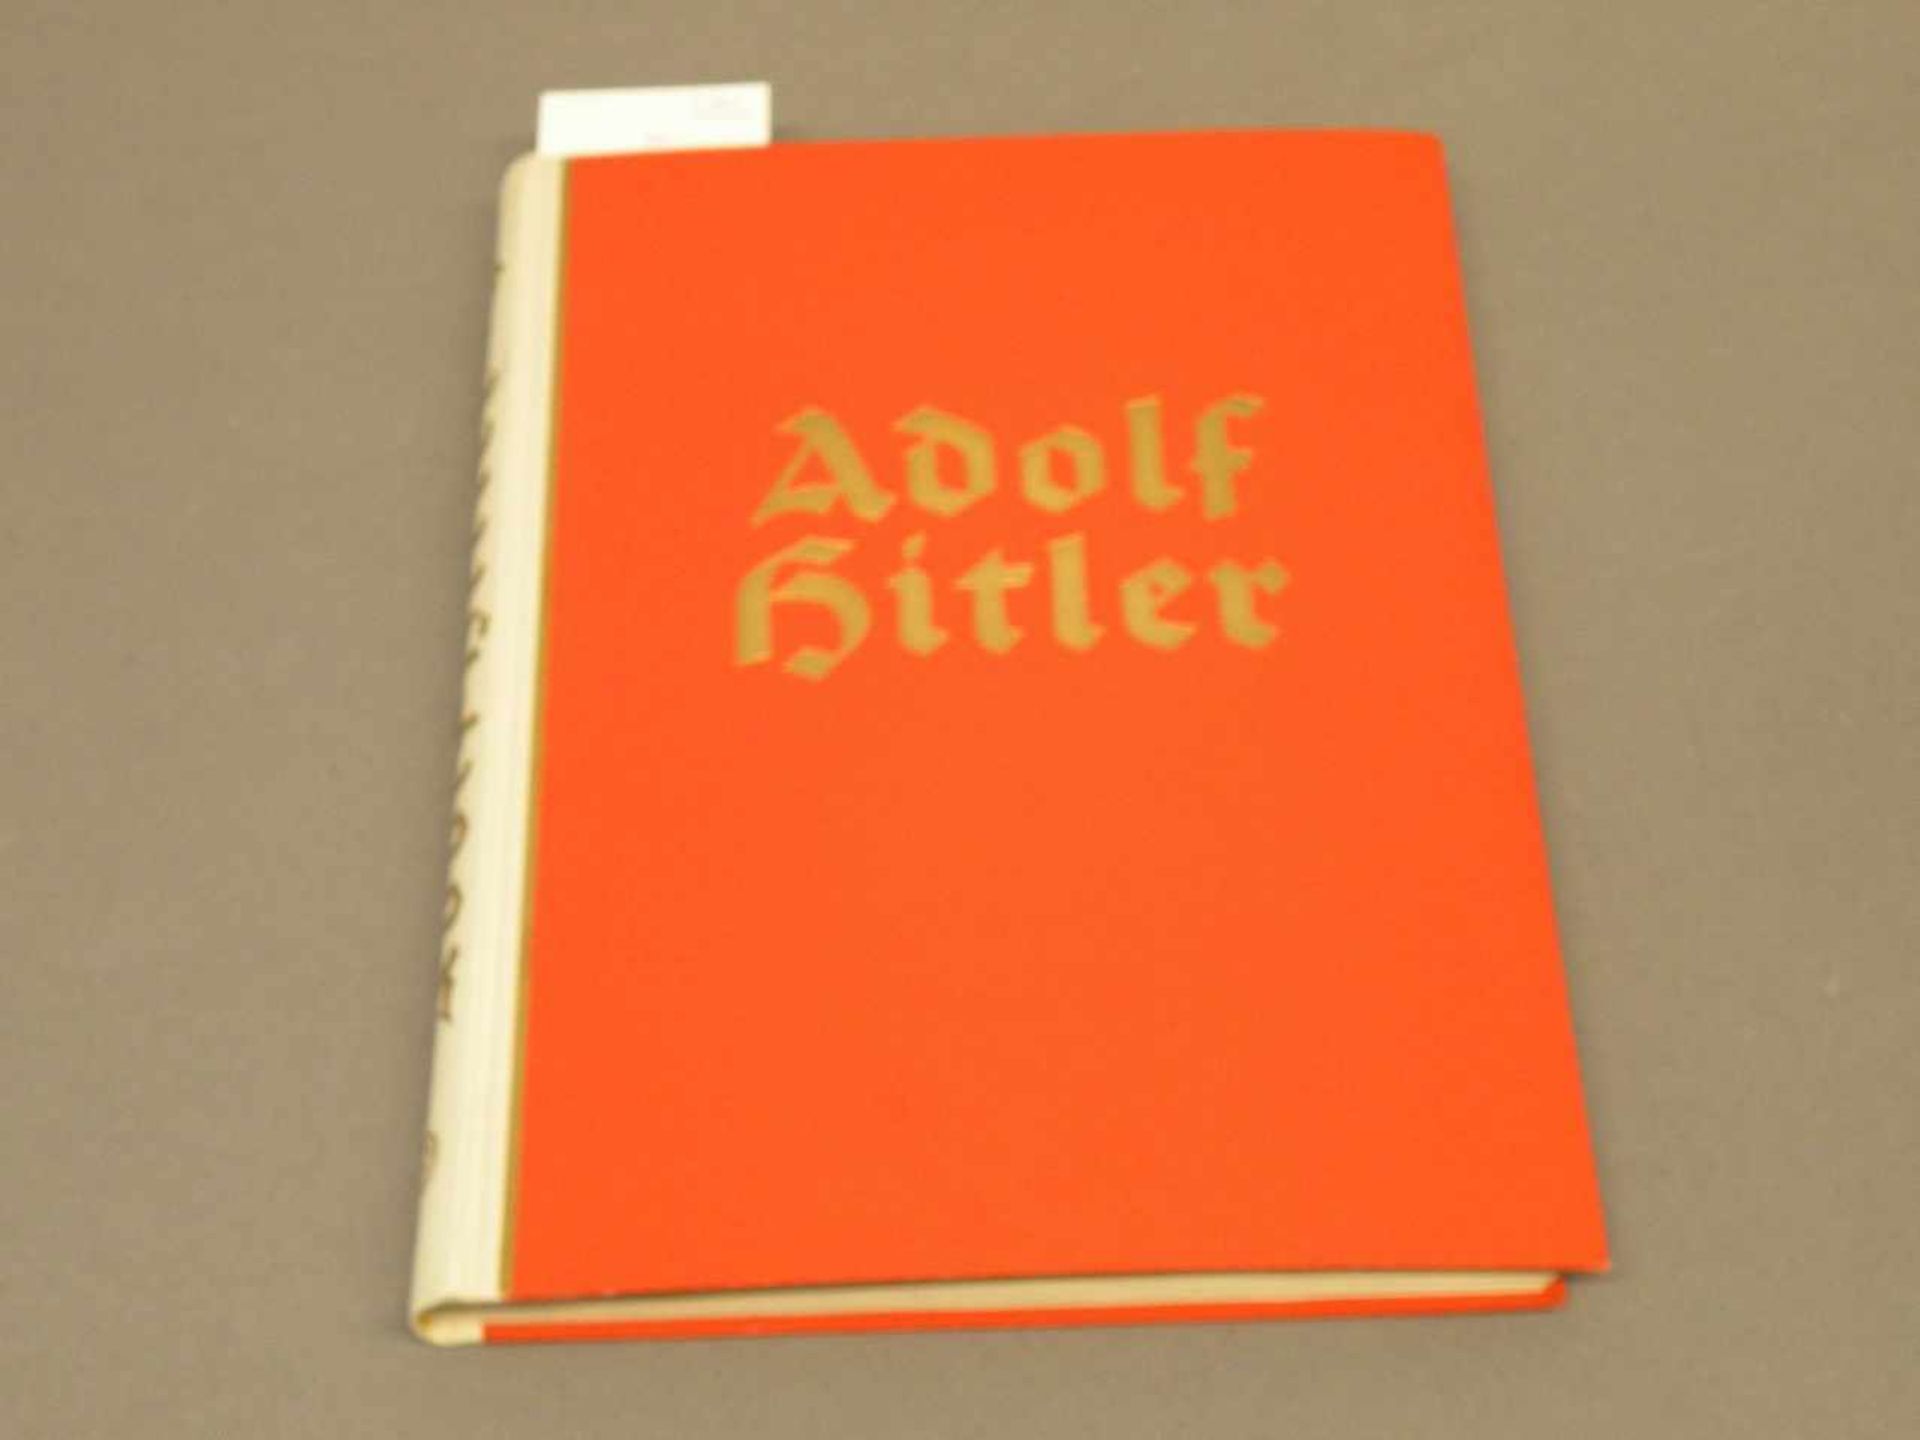 Zigarettenbilderalbum "Adolf Hitler", vollständig